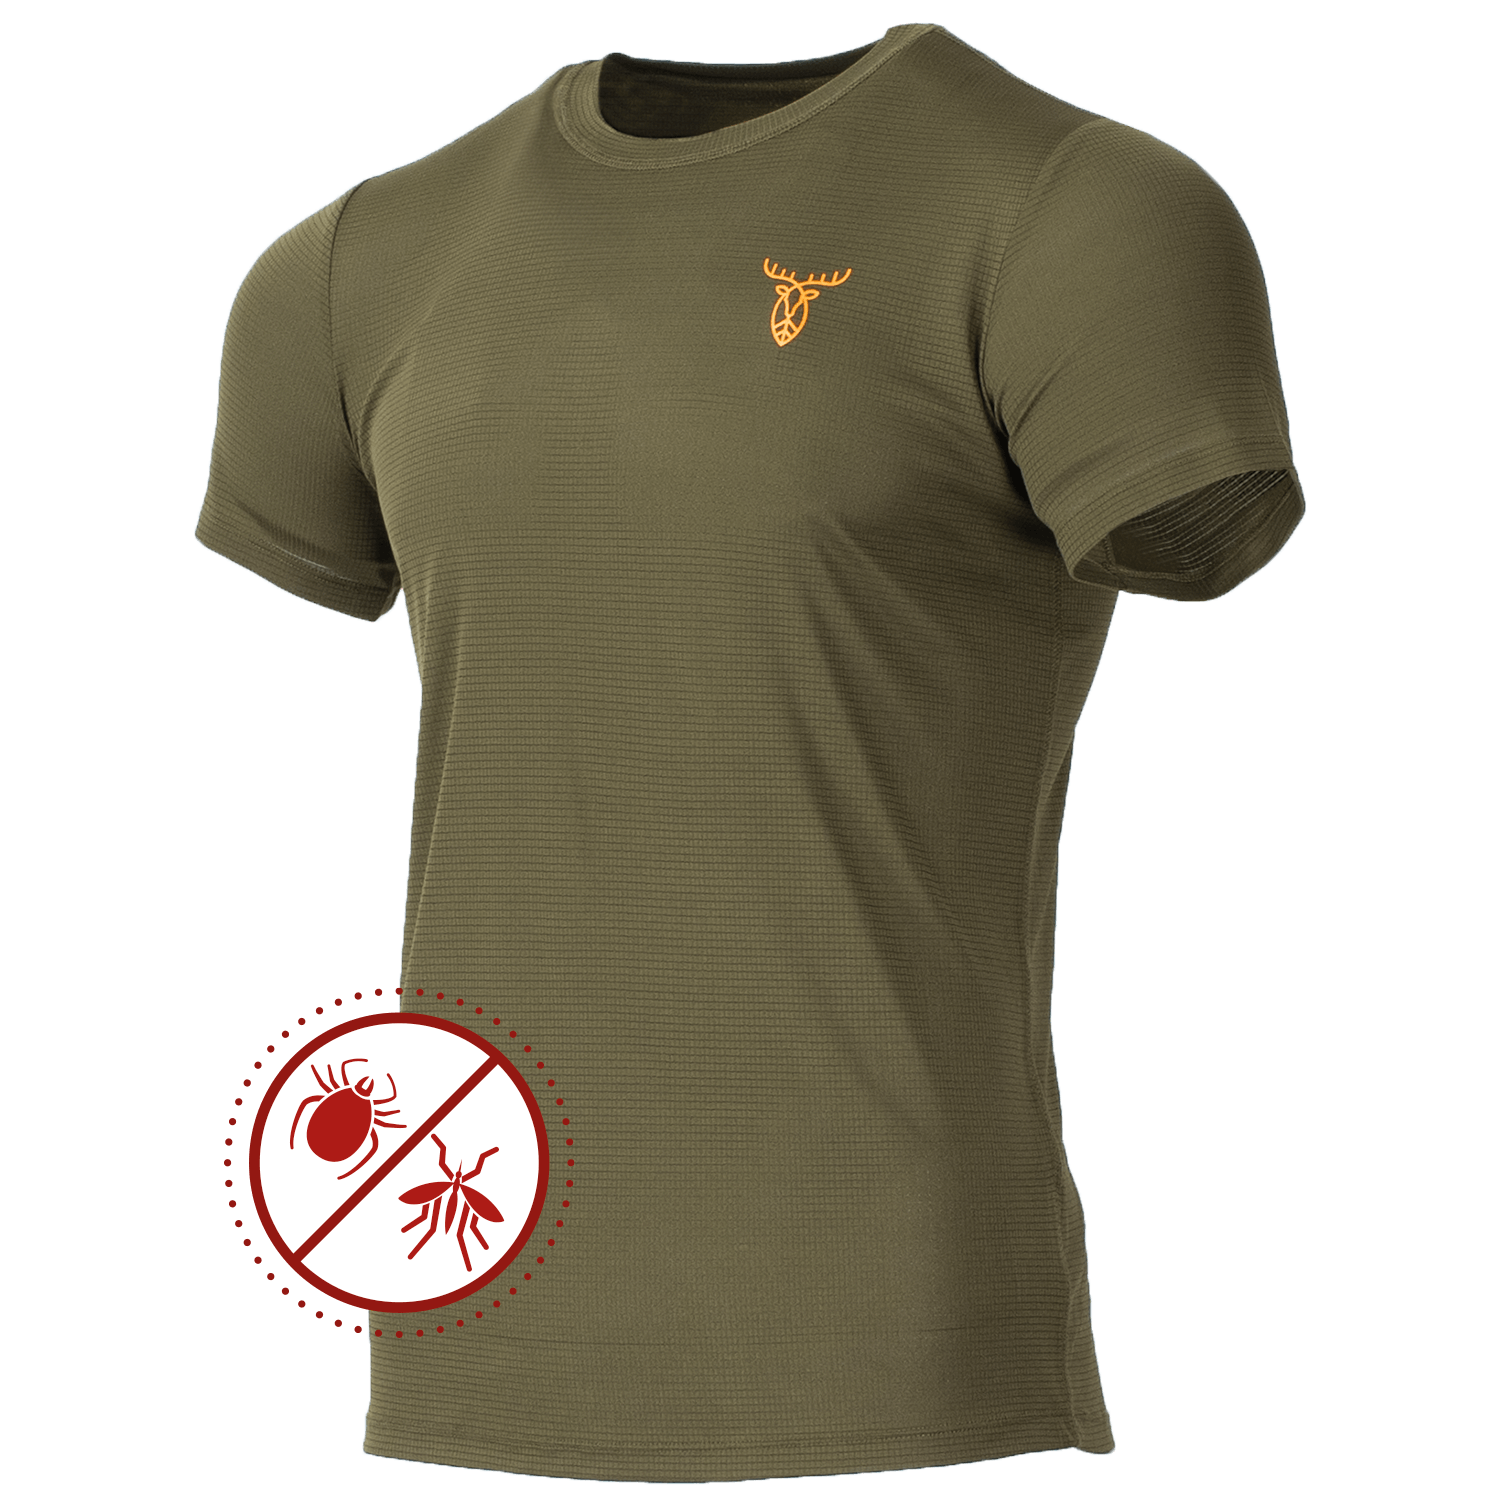 Pirscher Gear Ultralight Tanatex T-Shirt - Men's Hunting Clothing